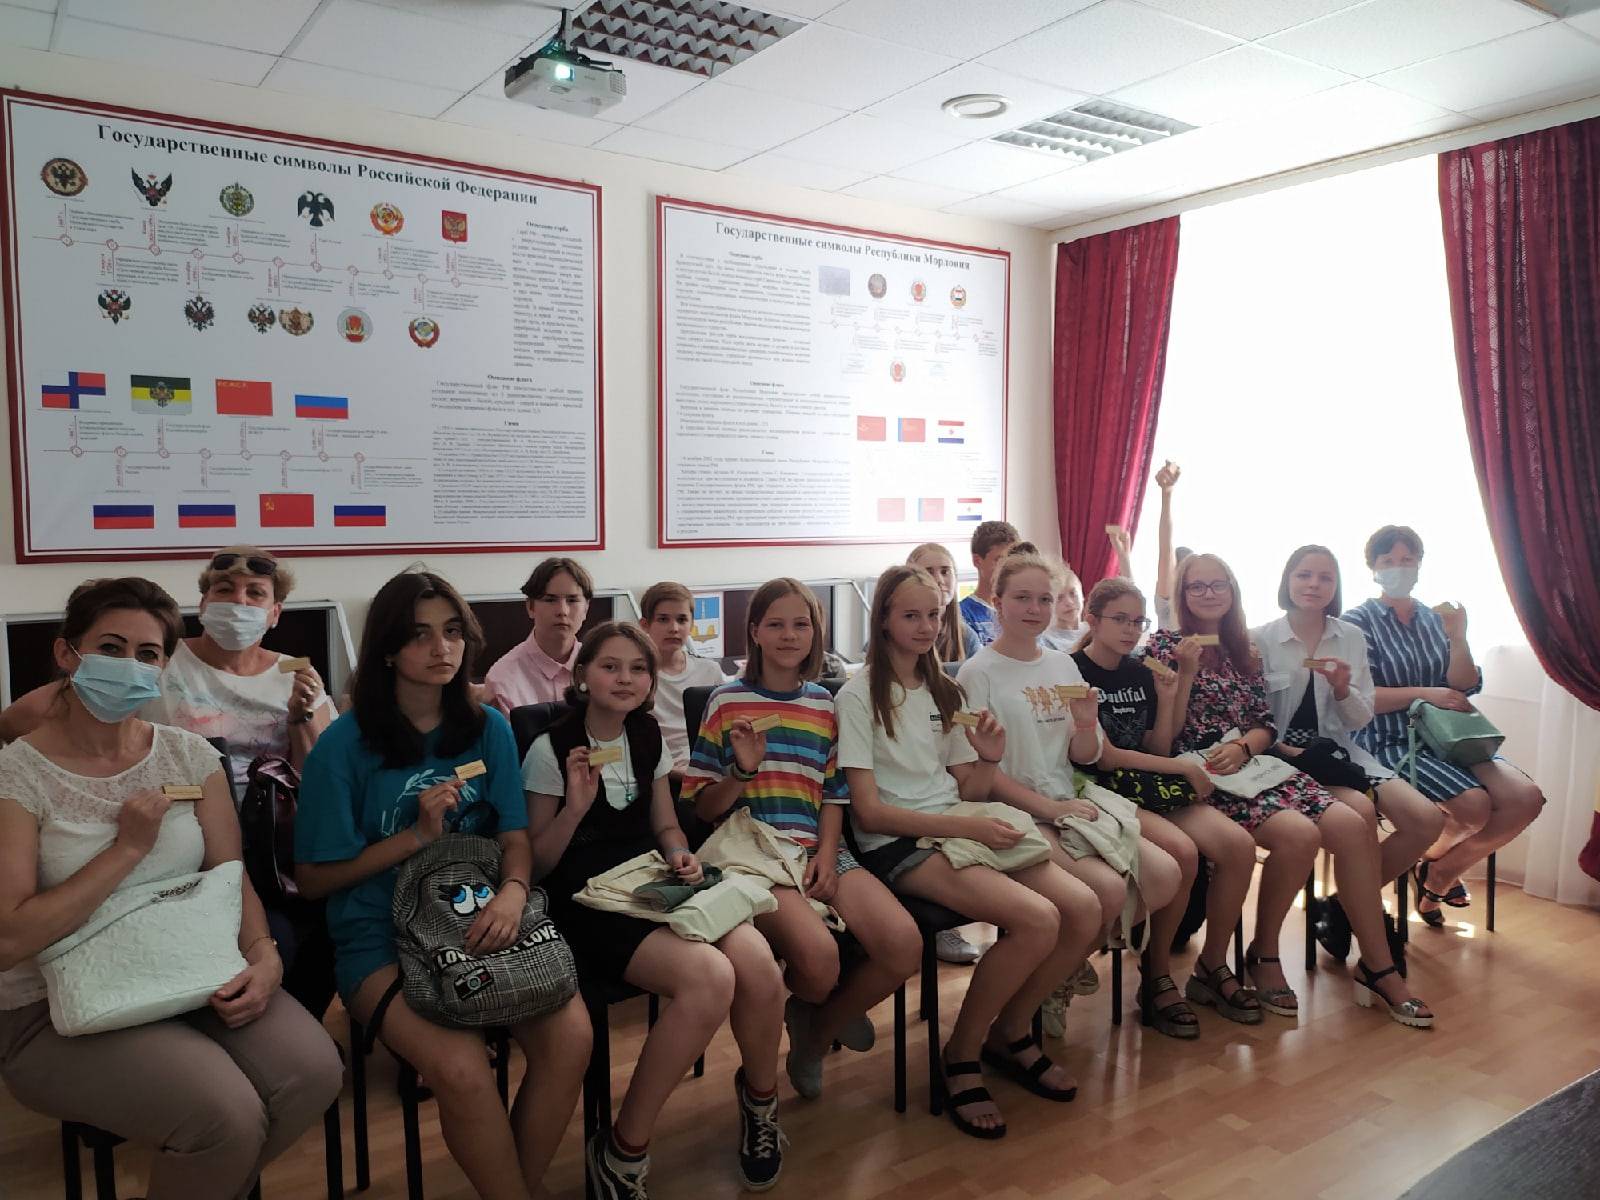 Национальная библиотека им. А. С. Пушкина РМ провела 17 мероприятий с участием школьников в июне 2021 г. в рамках проекта «Культурные нормативы»